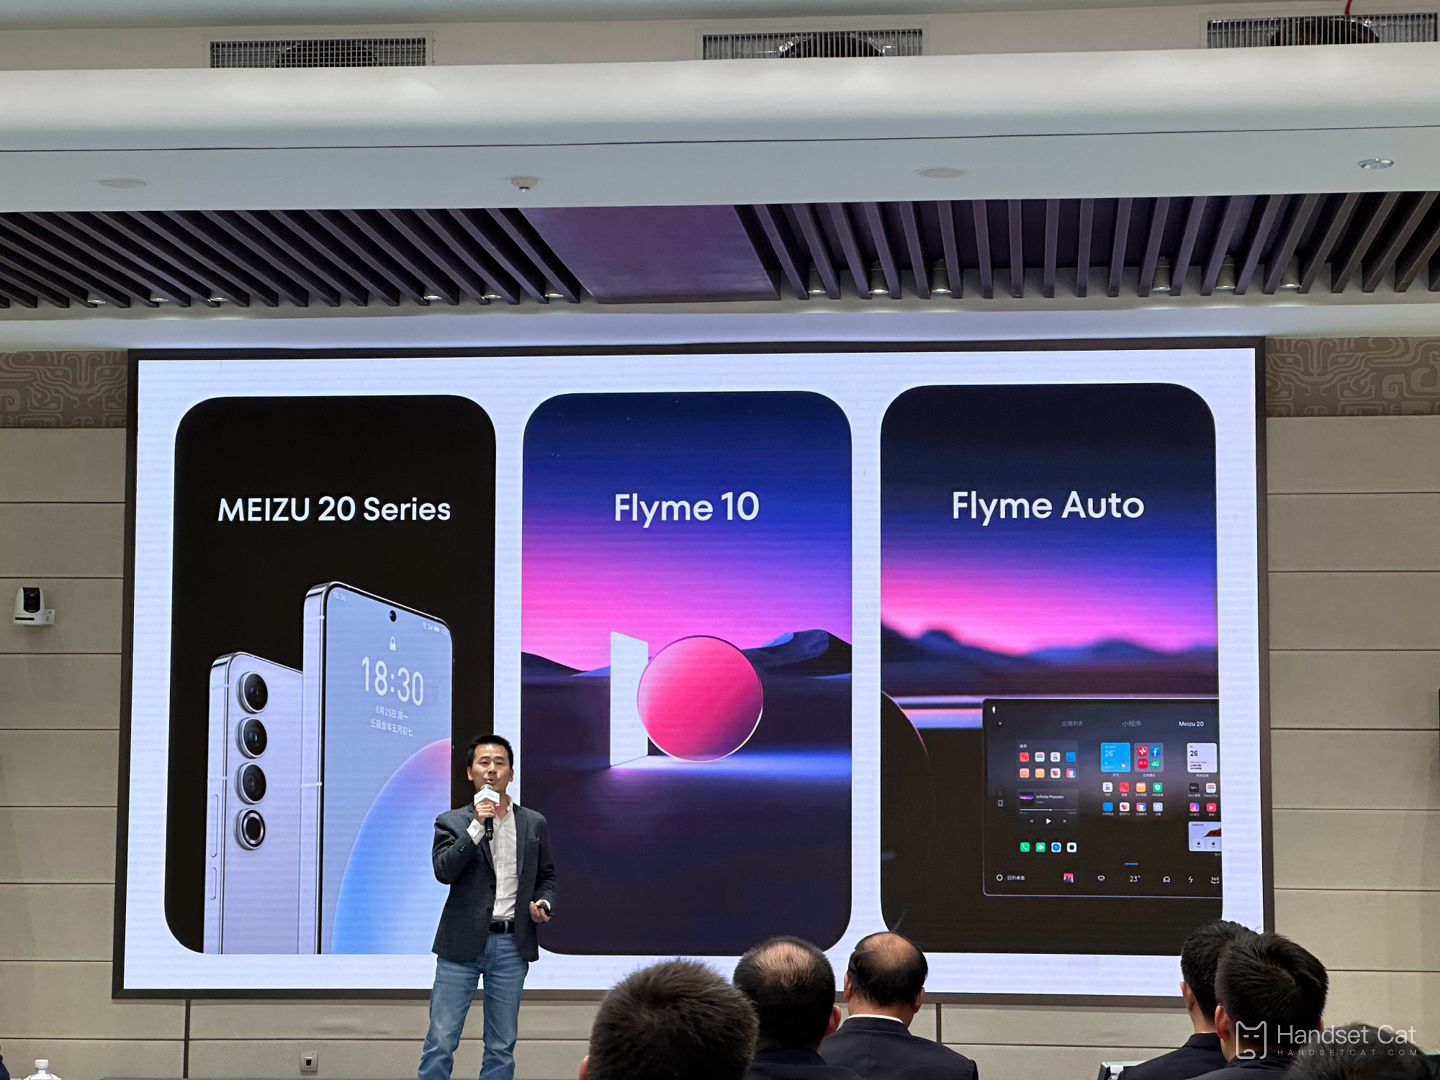 Les téléphones mobiles Meizu de la série 20 sont officiellement annoncés pour le 30 mars, avec le nouveau système Flyme 10